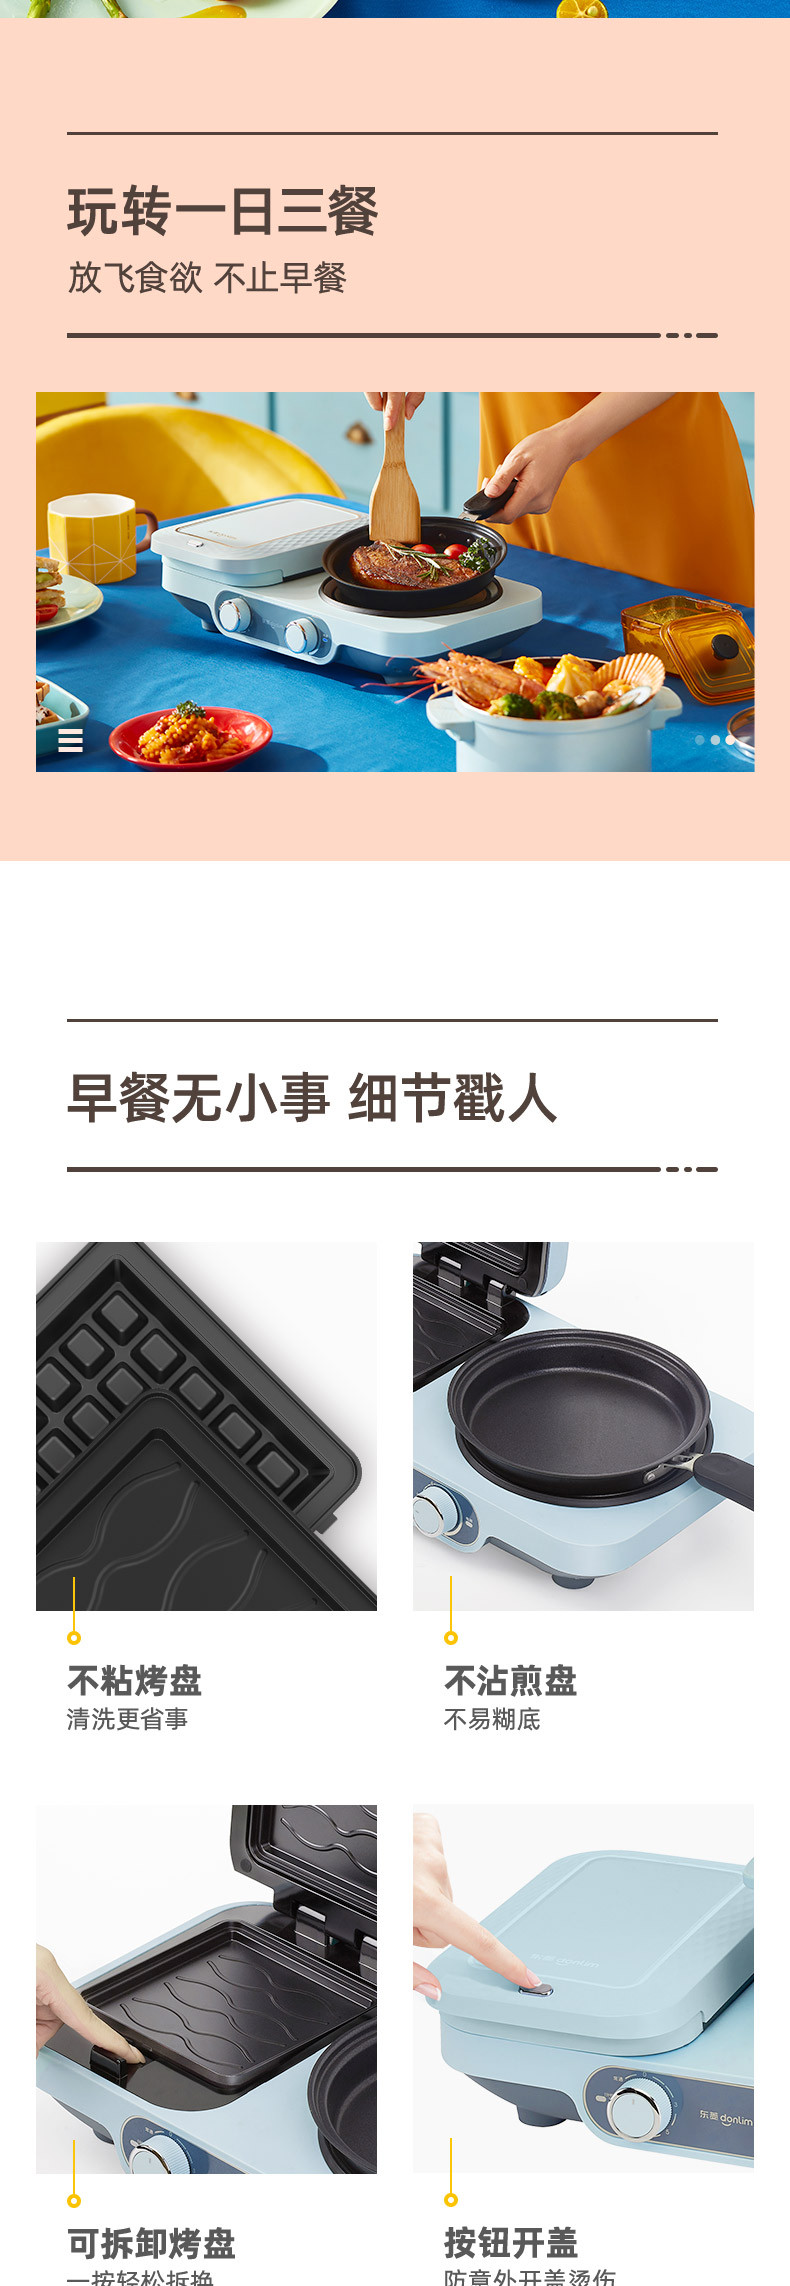  东菱 Donlim 烤面包机 多功能早餐机 三明治机 华夫饼机 多士炉  DL-3452(晴空蓝)